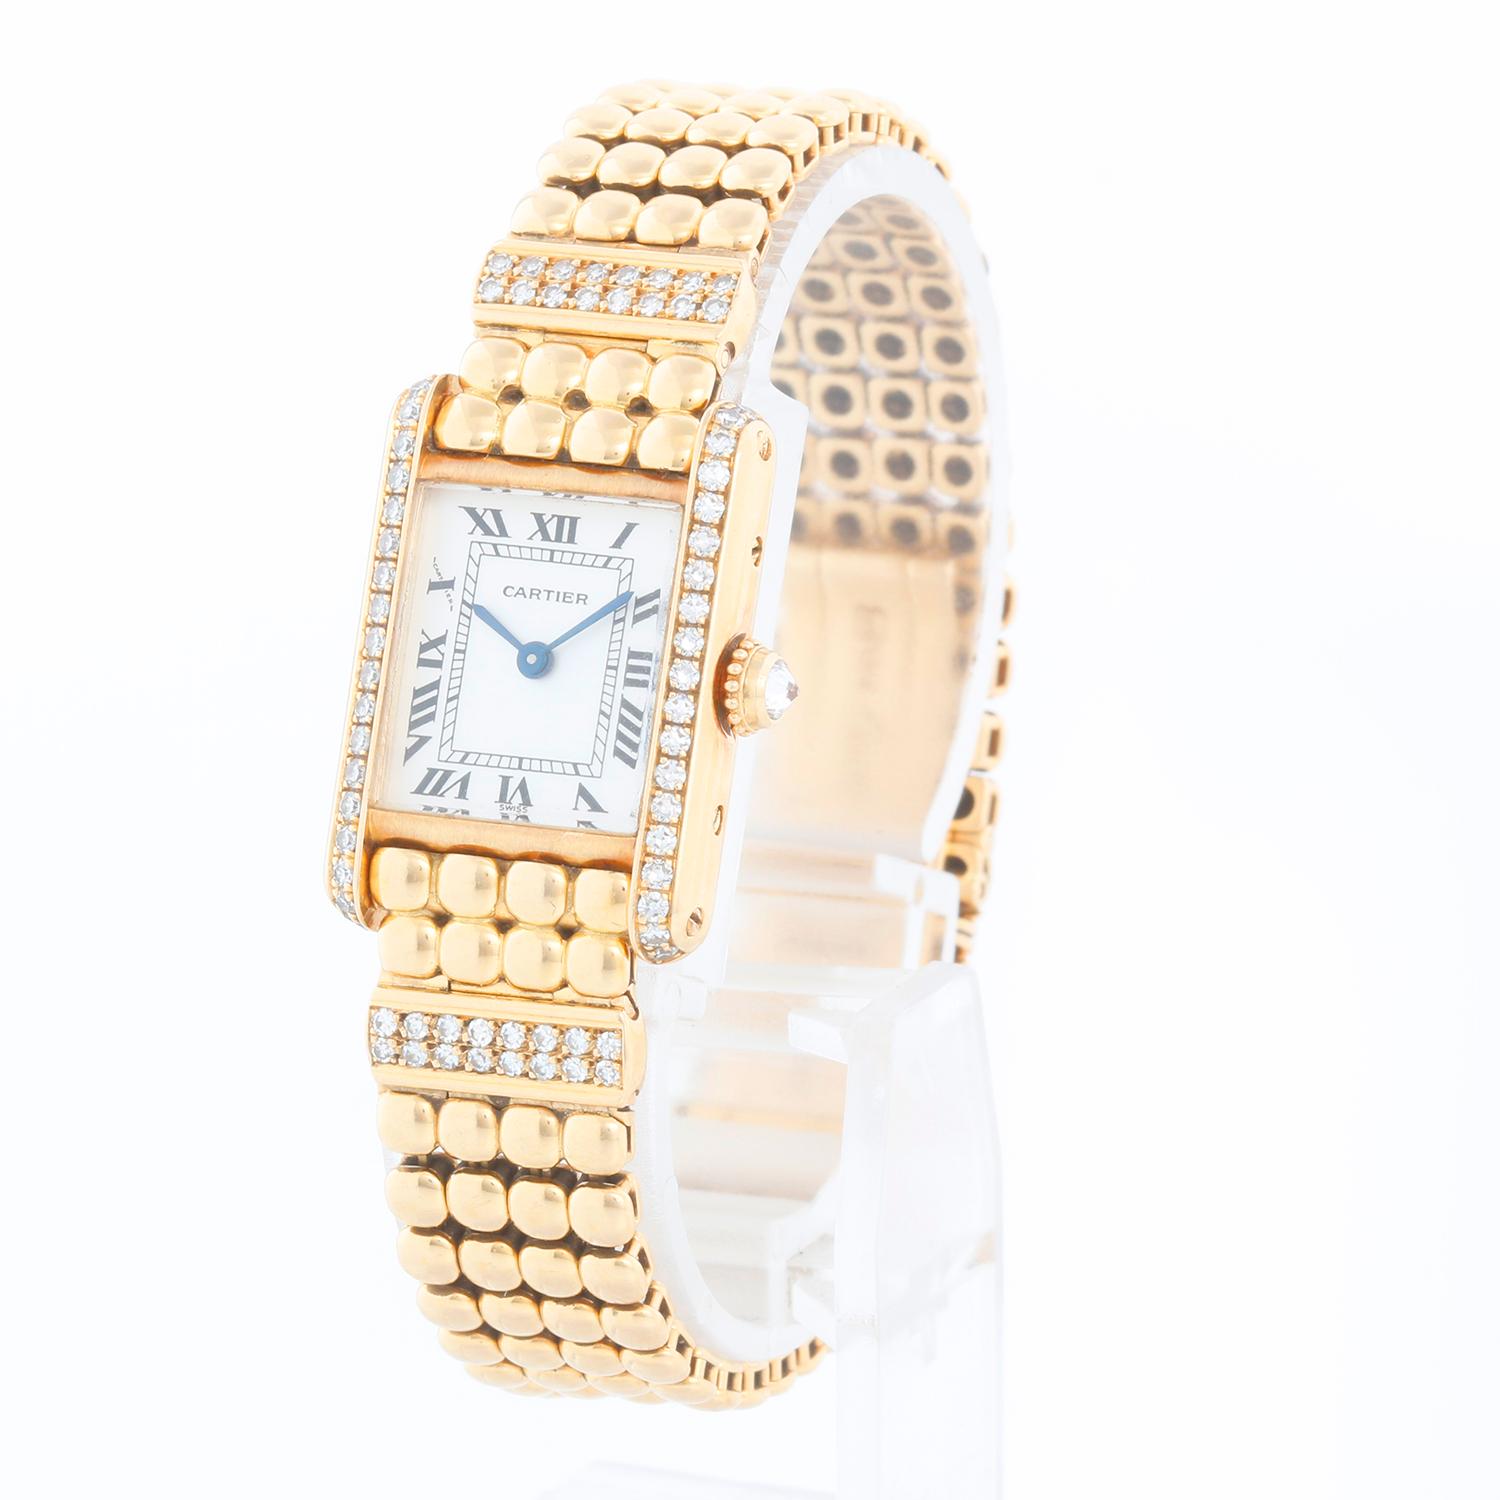 Rare & Unusual Cartier 18K Yellow Gold Tank Ladies Watch 8057 - Quartz. Fabrique Or jaune 18K avec pave  boîtier en diamant ( 18 x 25mm ). Cadran argenté avec chiffres romains noirs. Bracelet de style boule avec une barre de diamants à double rangée